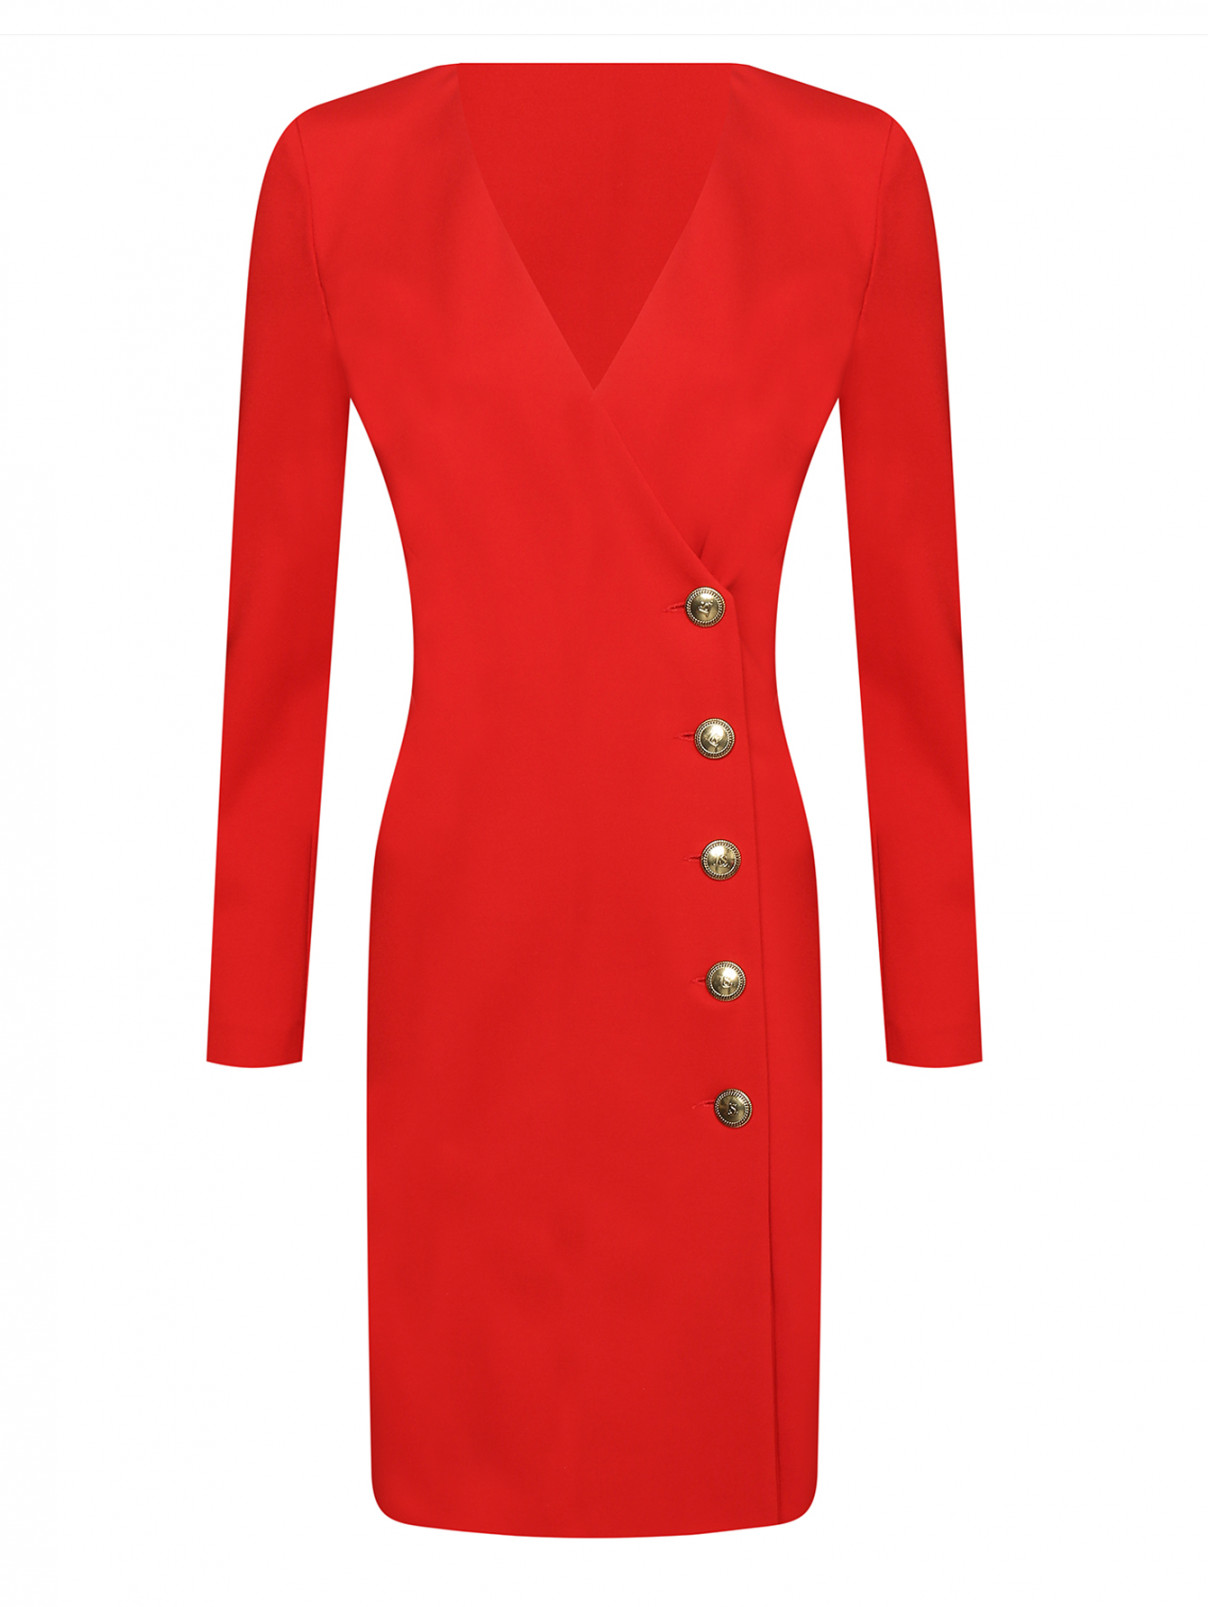 Однотонное платье-миди на пуговицах Luisa Spagnoli  –  Общий вид  – Цвет:  Красный